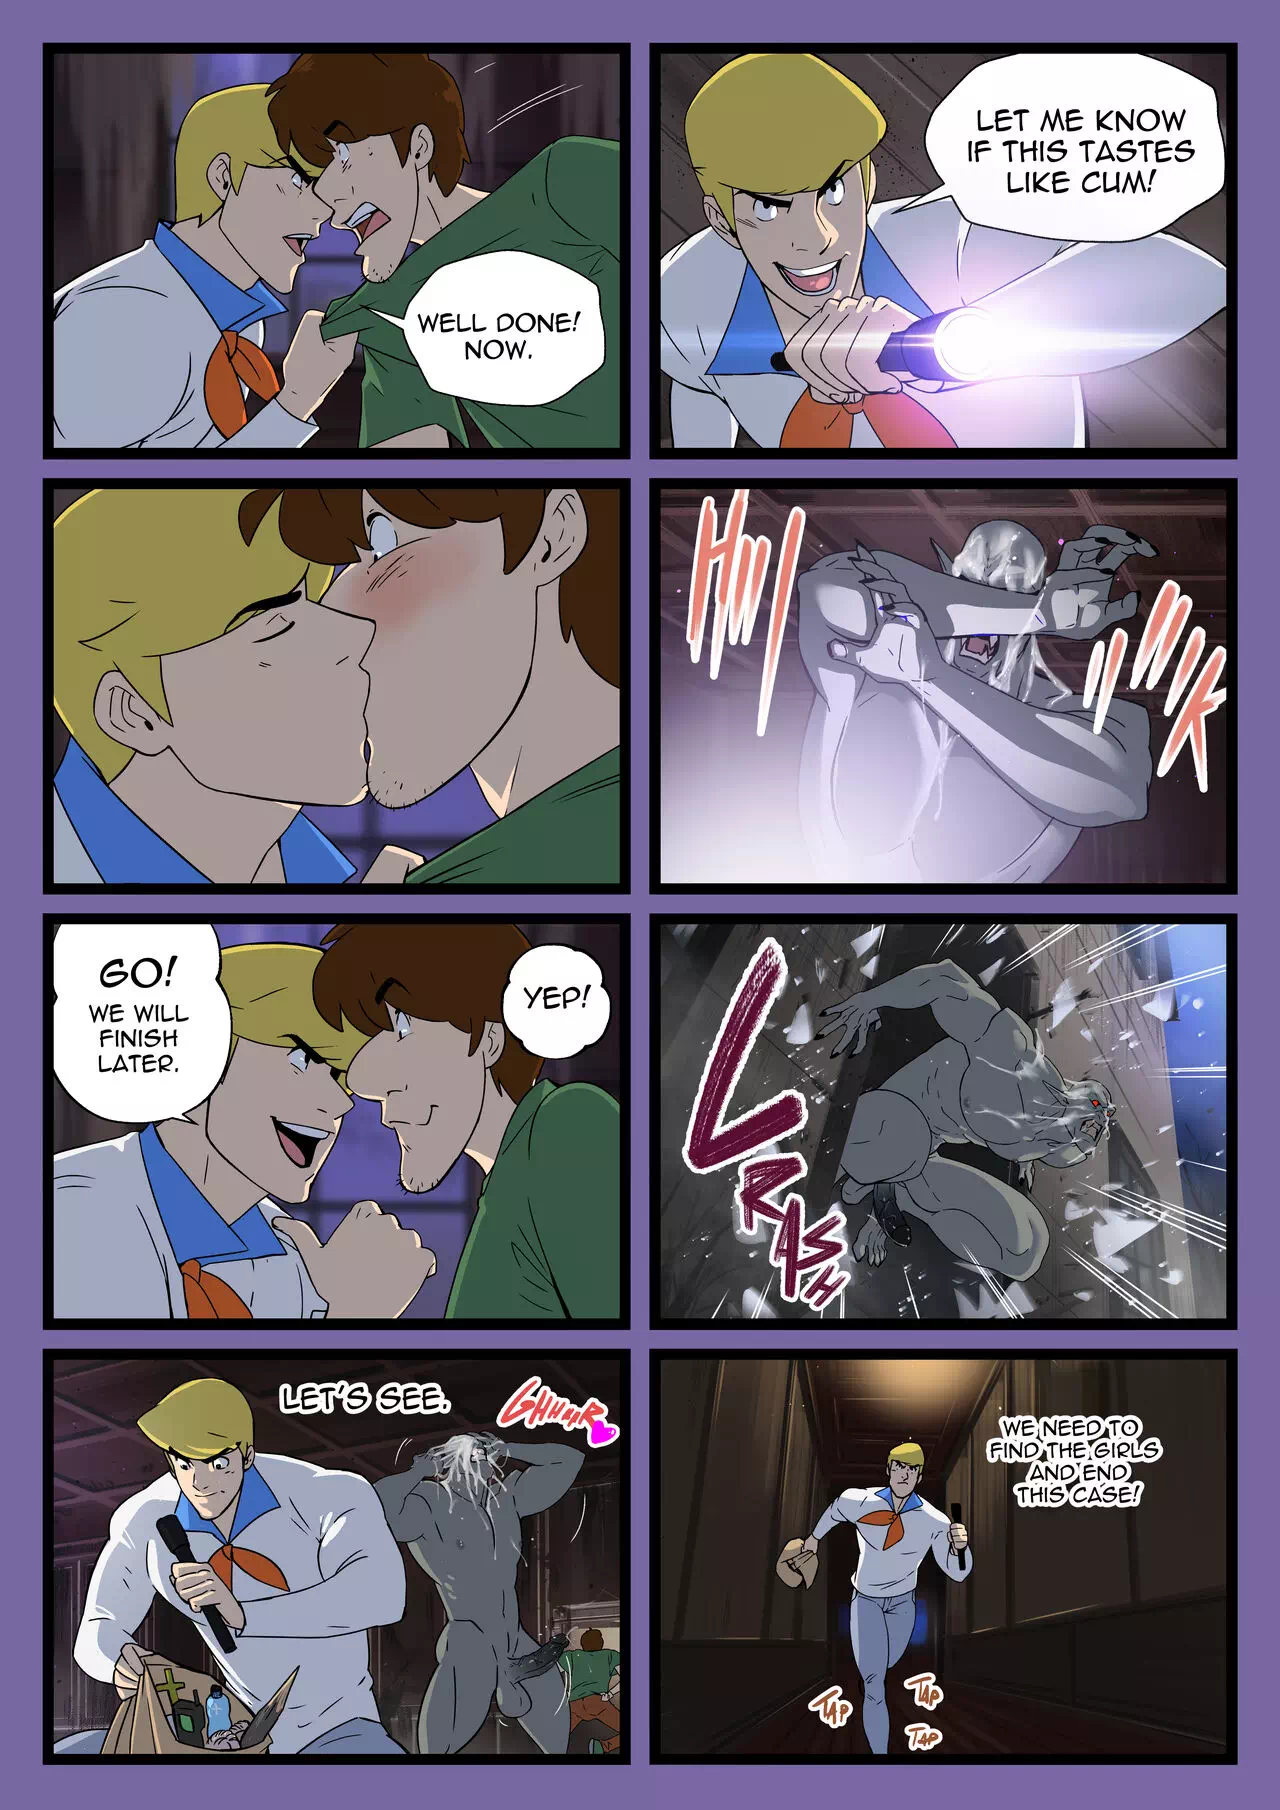 Yaoi porn comics Scooby-Doo â€“ Scooby Dudes: The Cumpire case! Â» Page 4